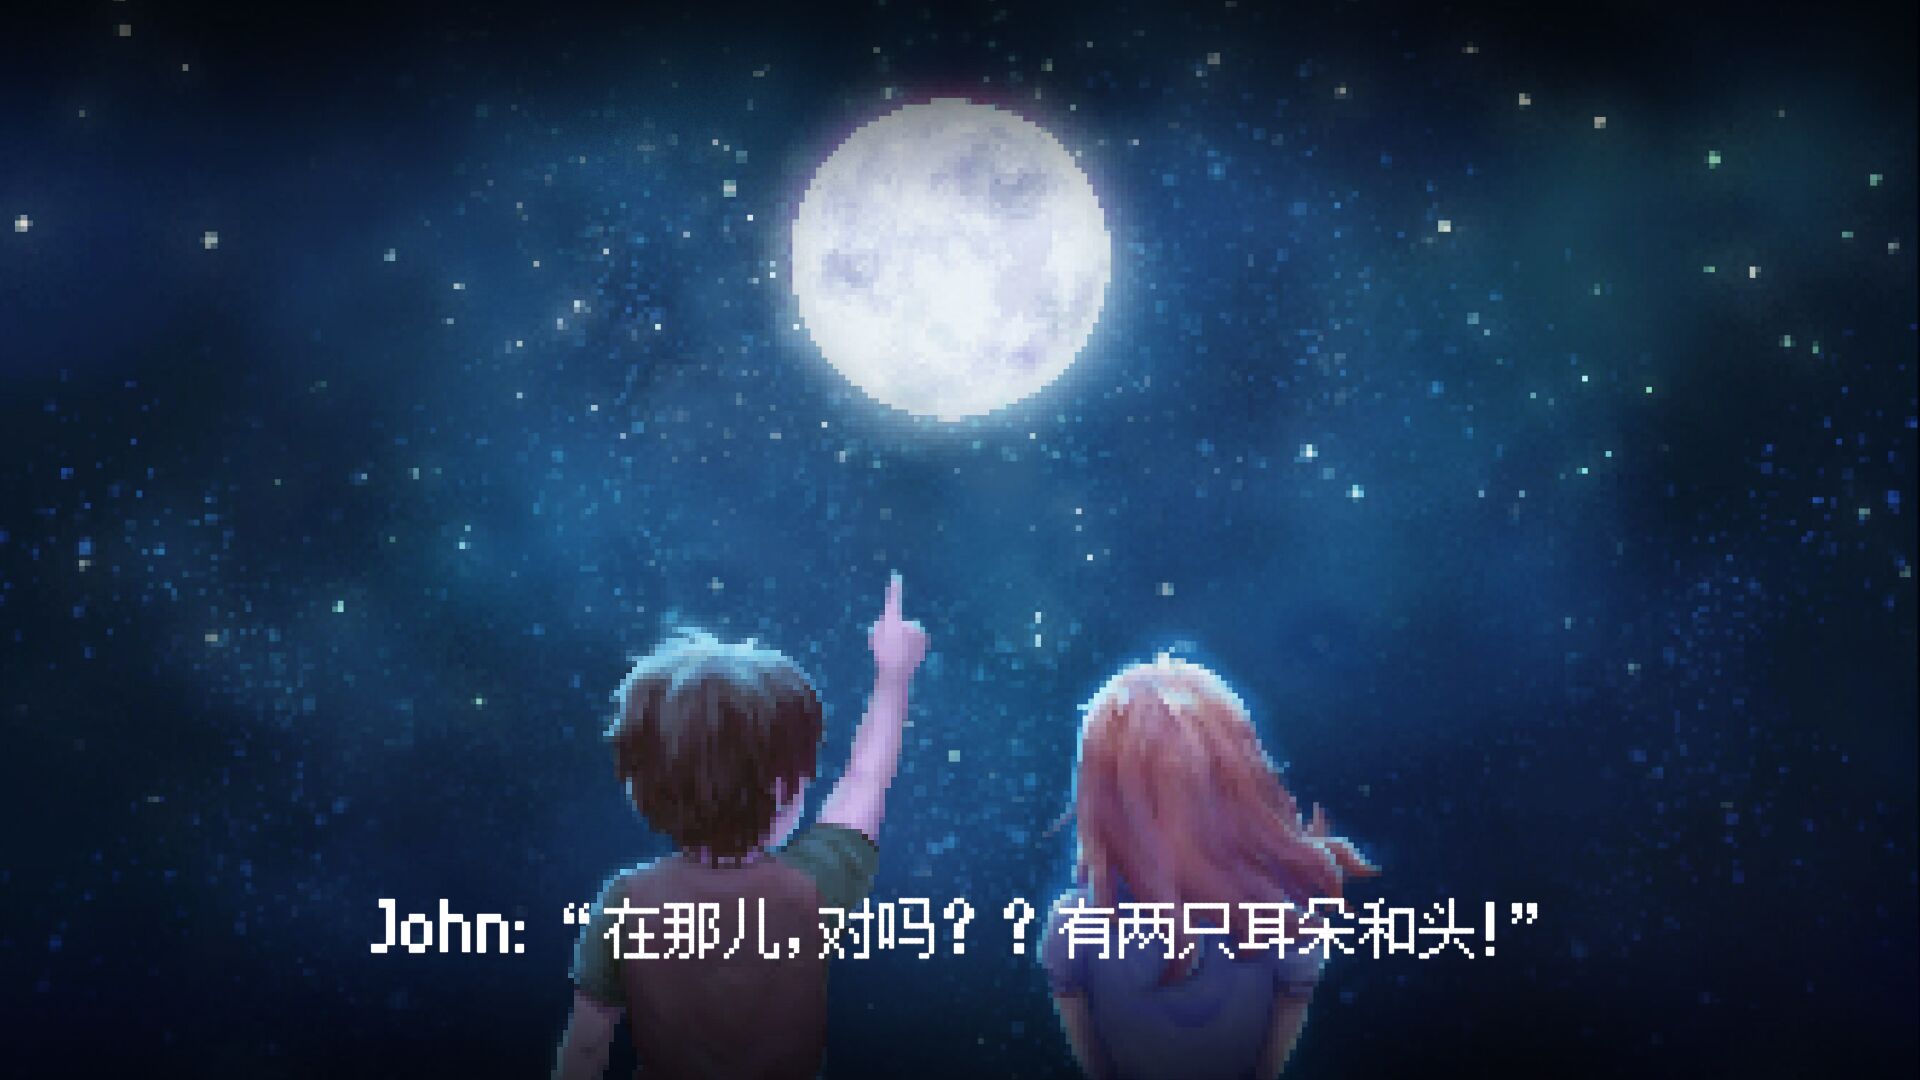 [推荐] 【星野简评】《去月球》美妙音乐奏响名为"我梦想"的回忆【100